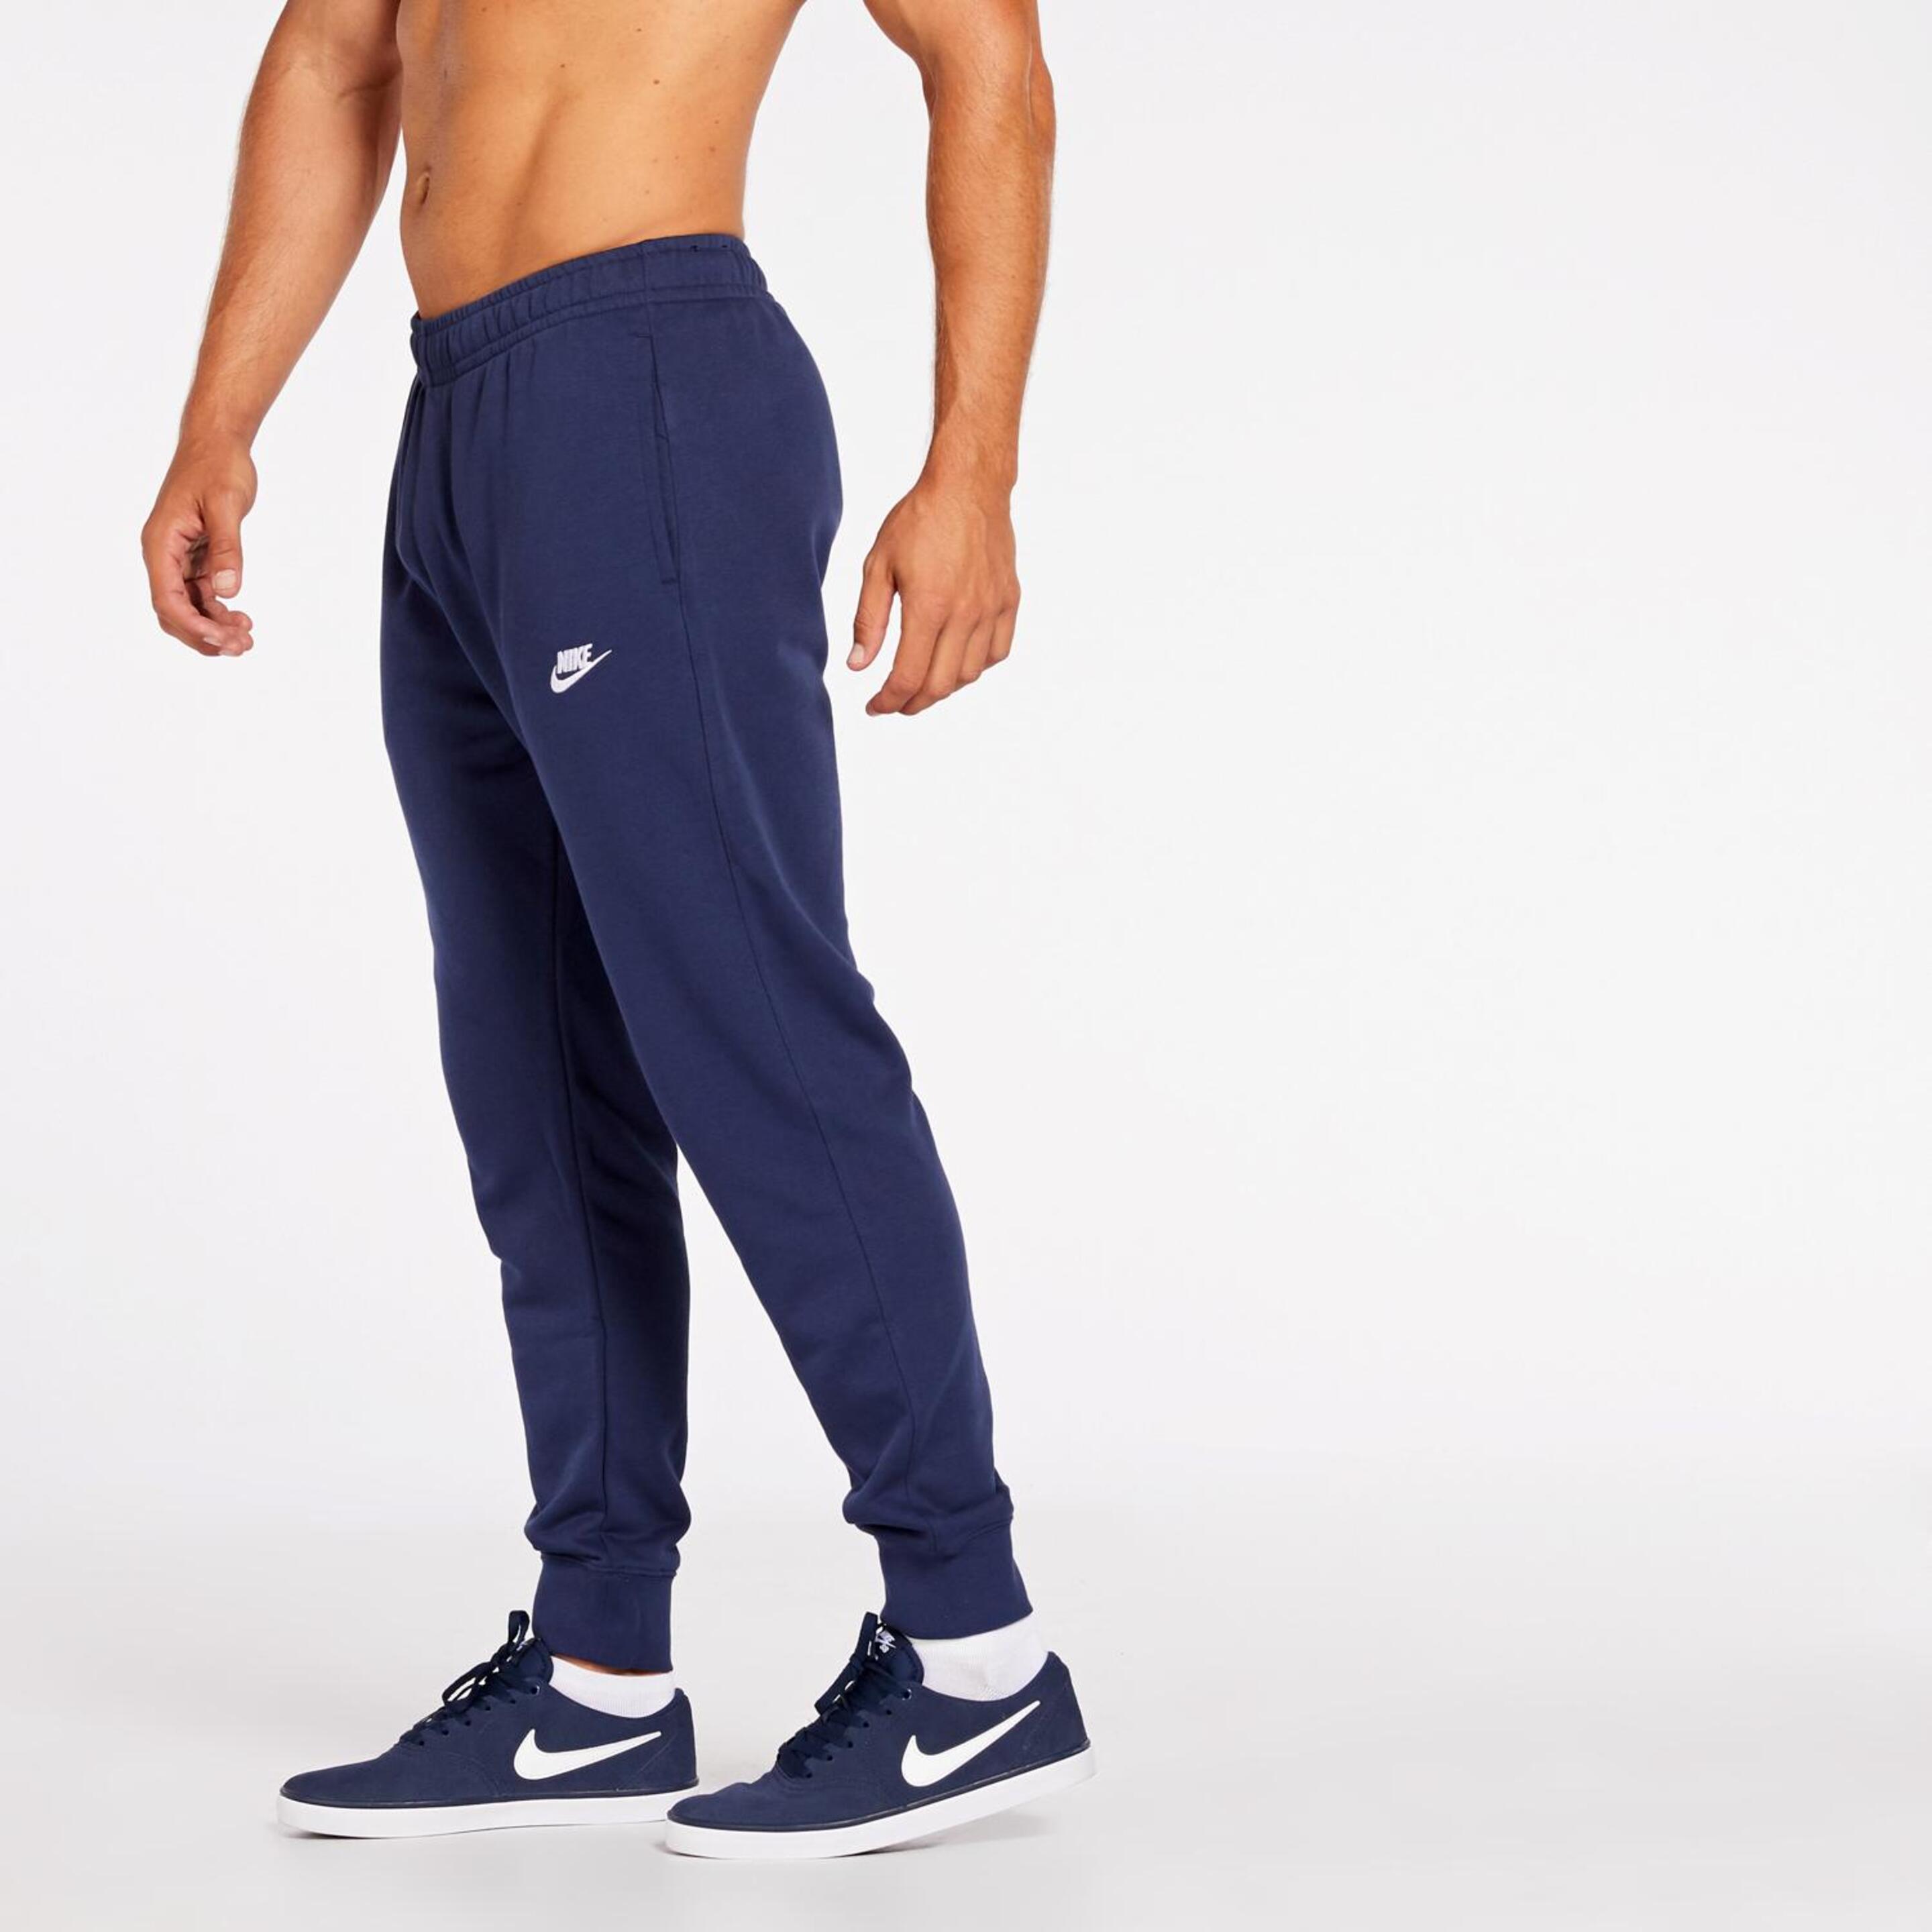 Pantalón Nike Clublogo